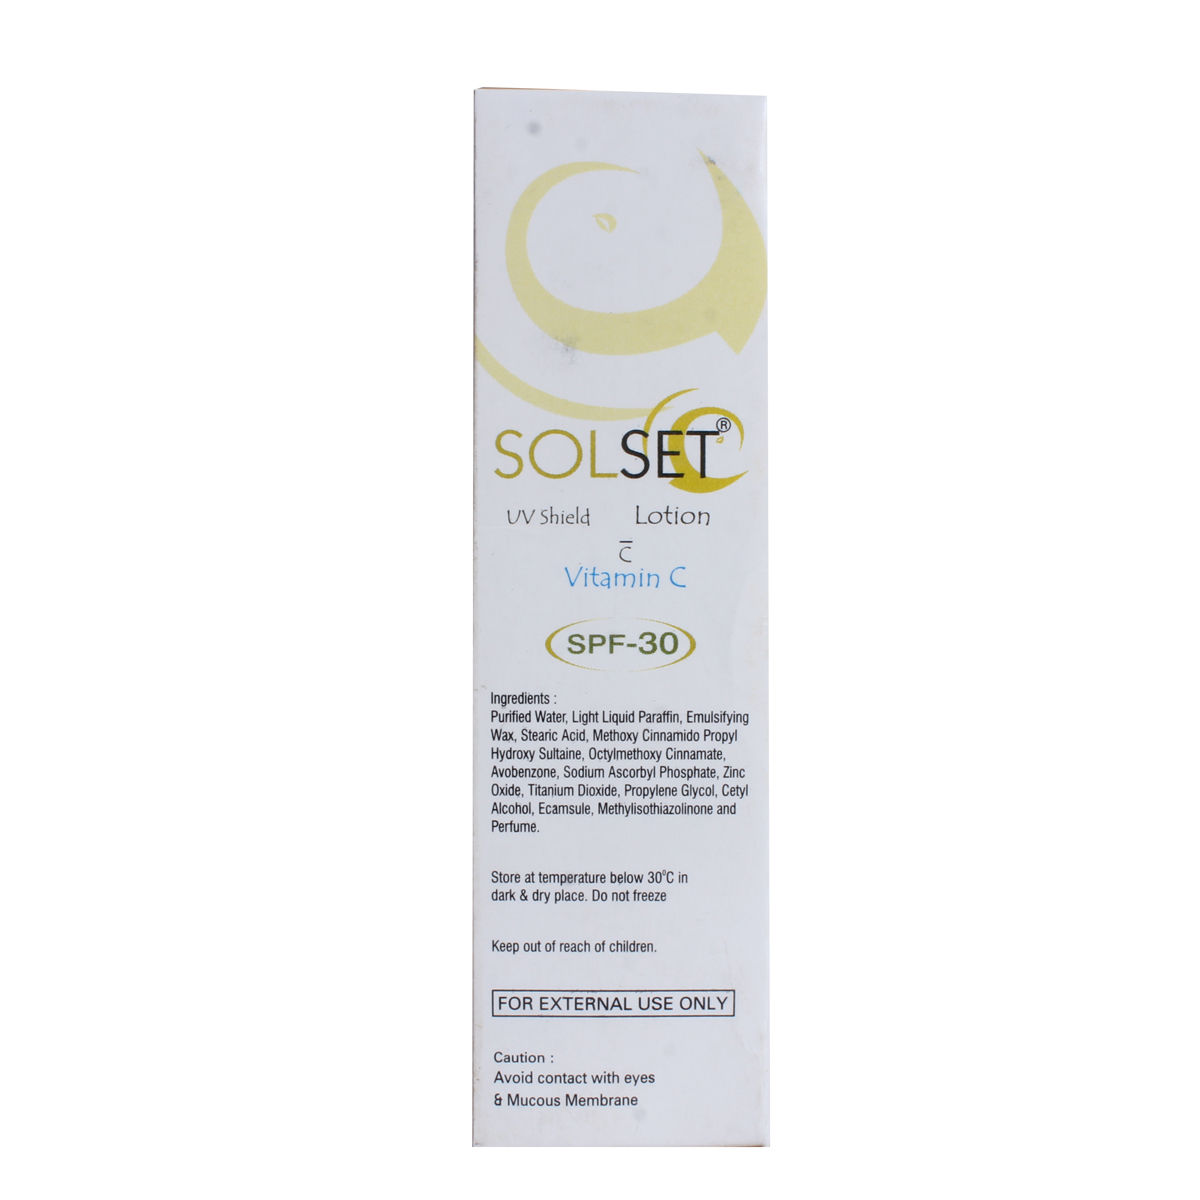 Solset Spf 30 Sunscreen Lotion 60 ml, Pack of 1 